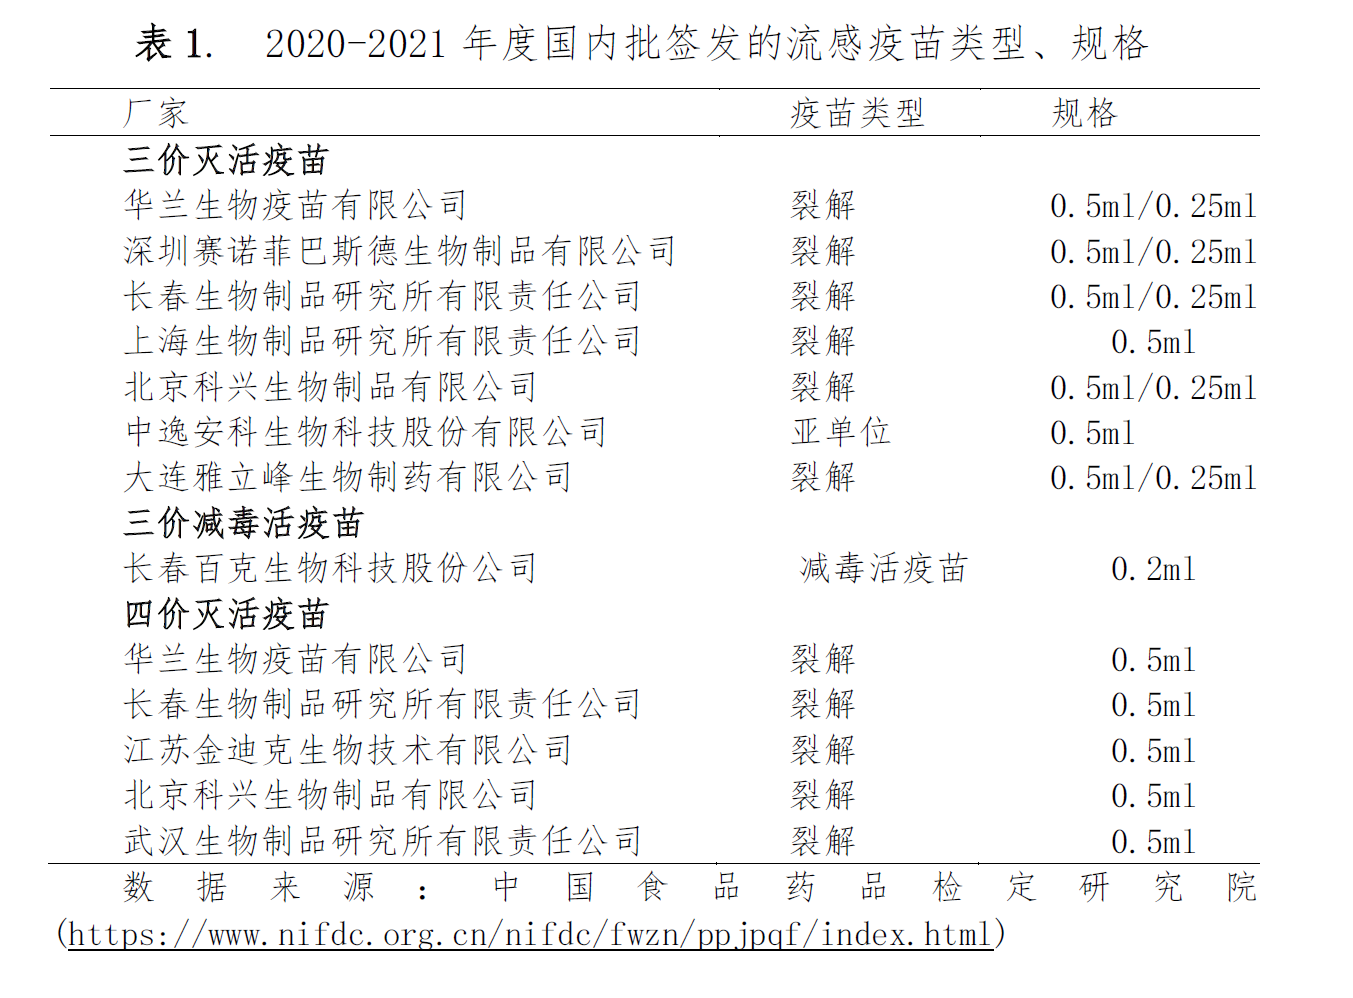 020-2021年度国内批签发的流感疫苗类型和规格。来源：中国食药检定研究院